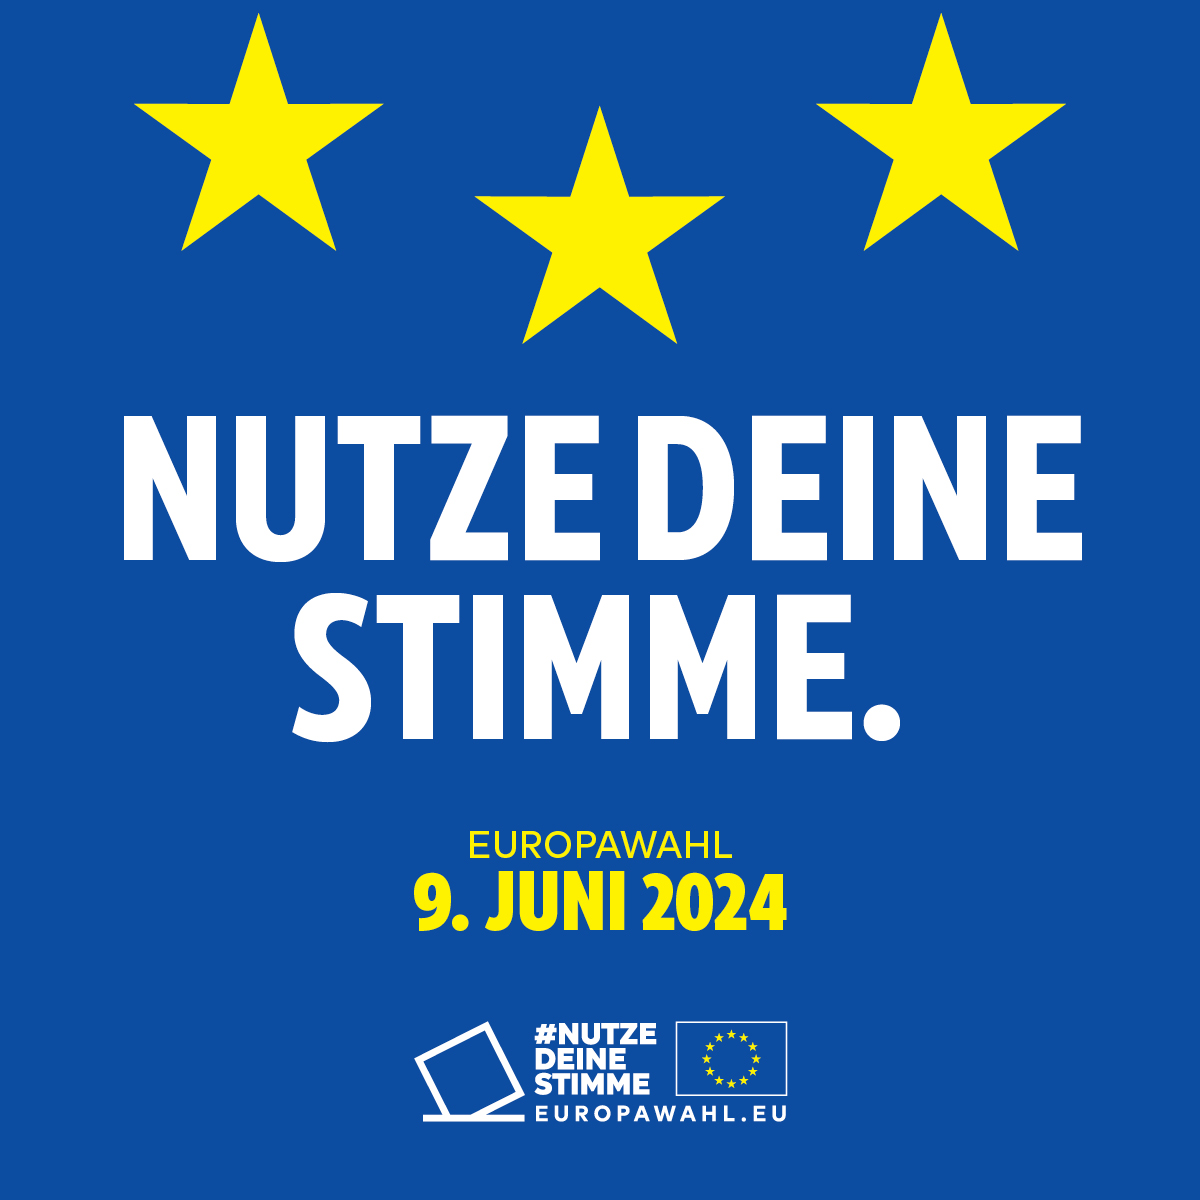 Auf blauem Hintergrund sind oben drei gelbe Sterne. Darunter steht Nutze deine Stimme. Europawahl 9. Juni 2024